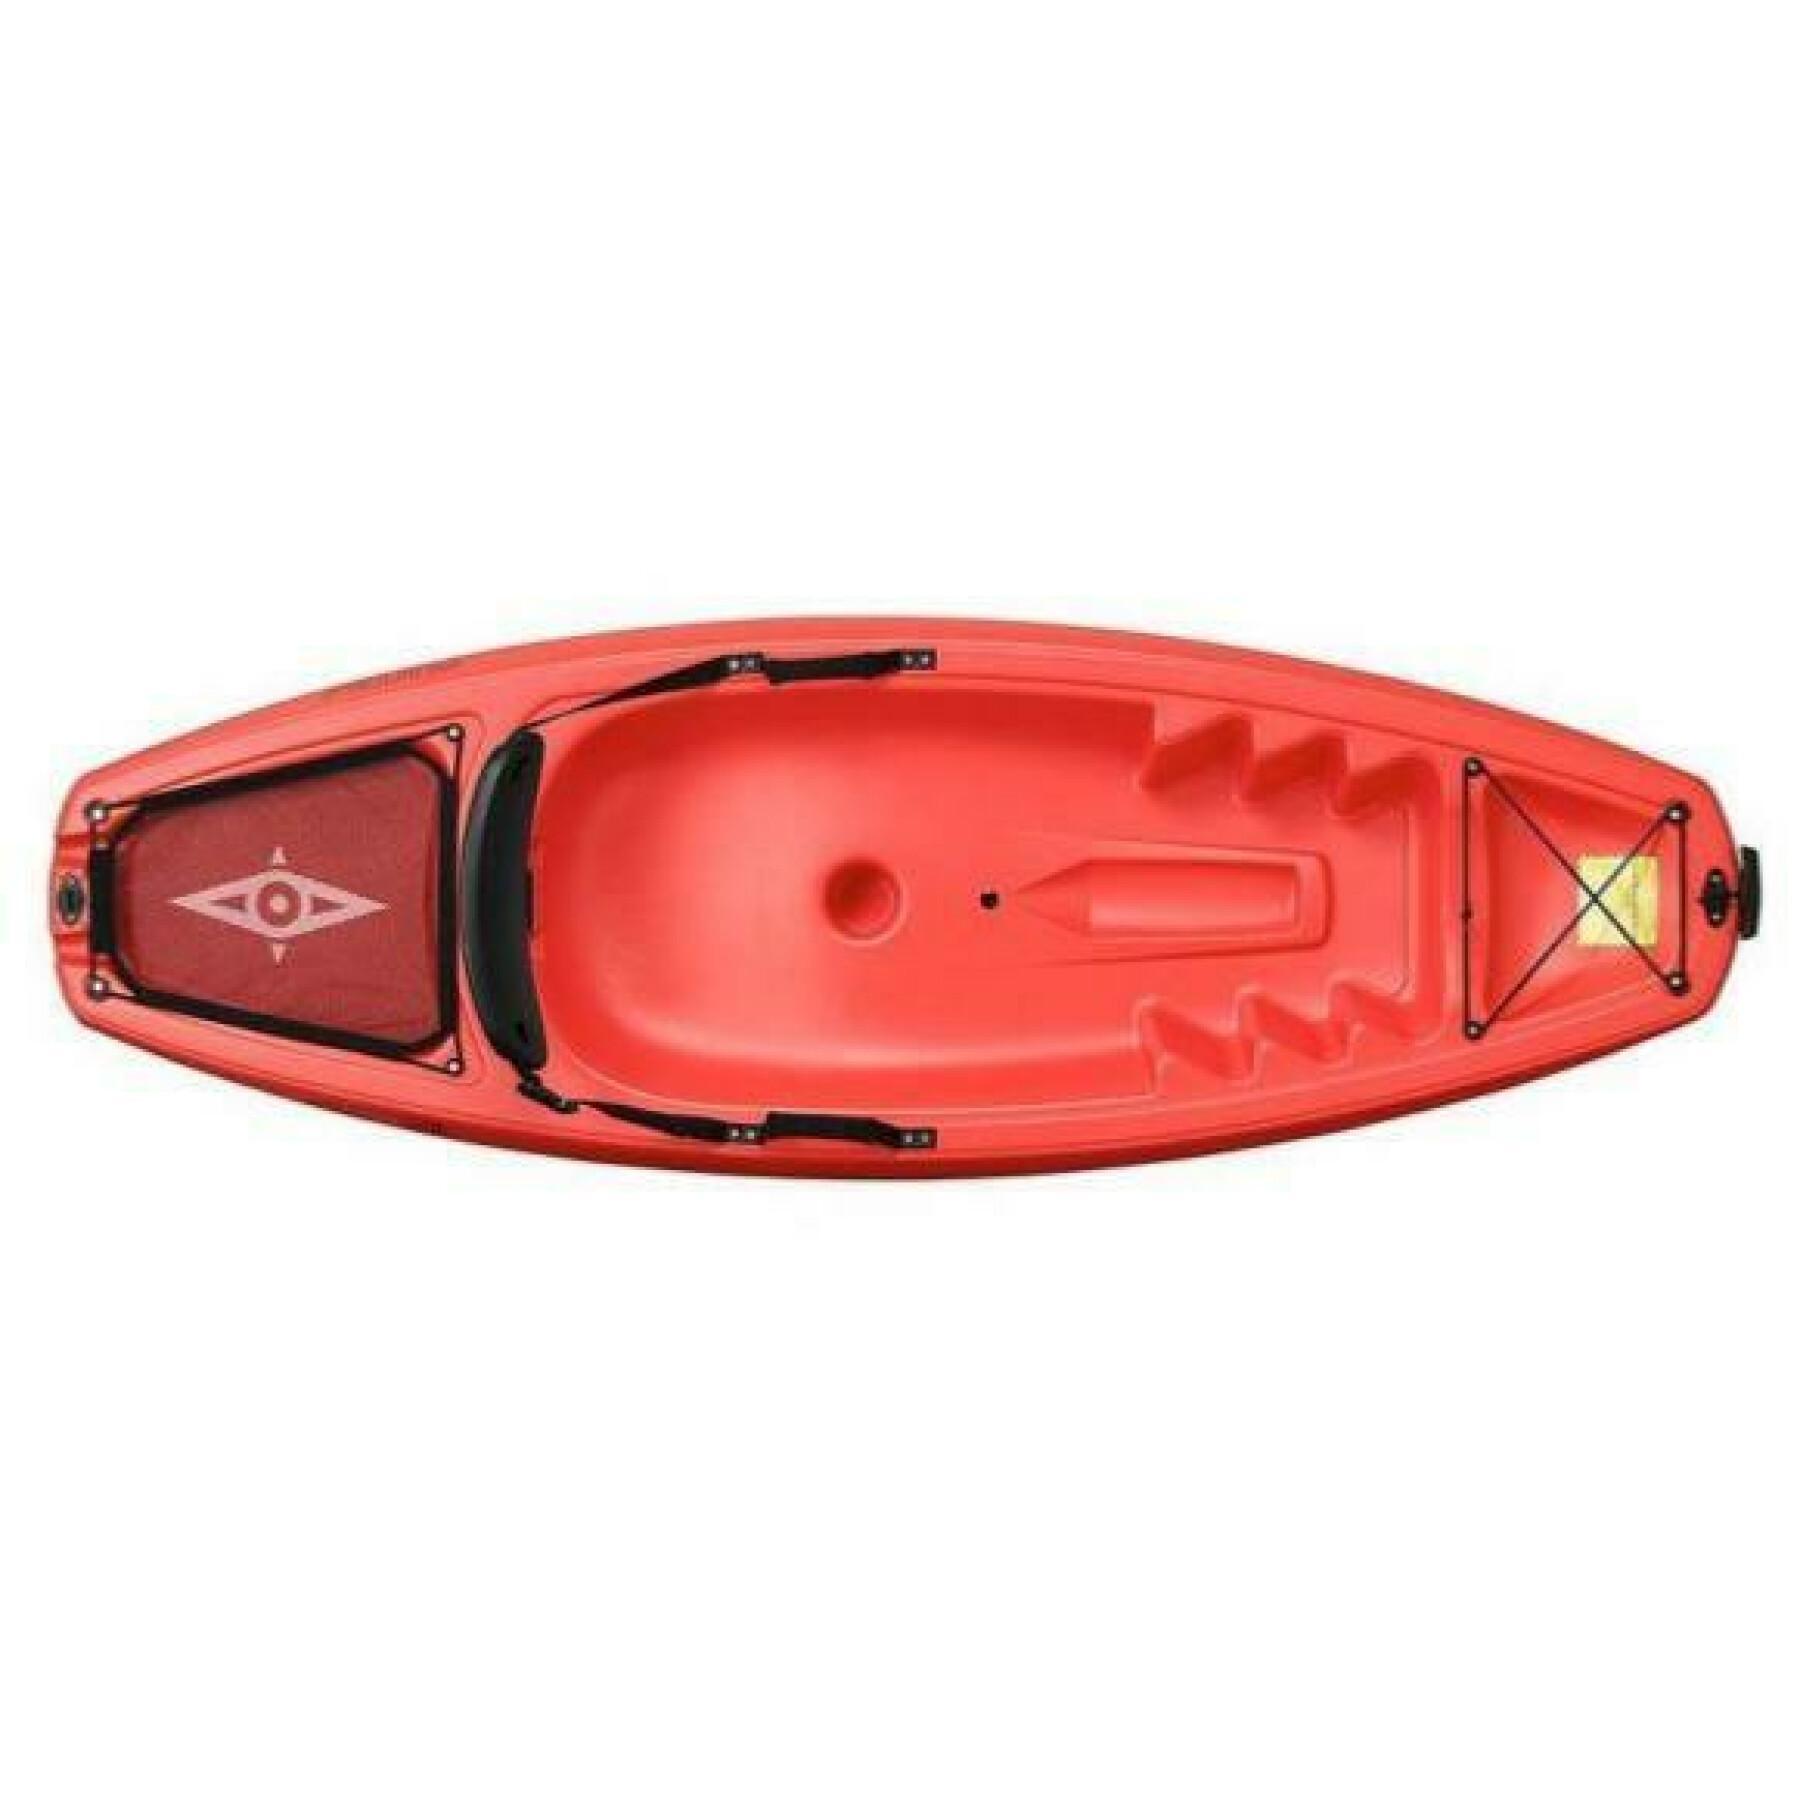 Children's kayak Point 65°N